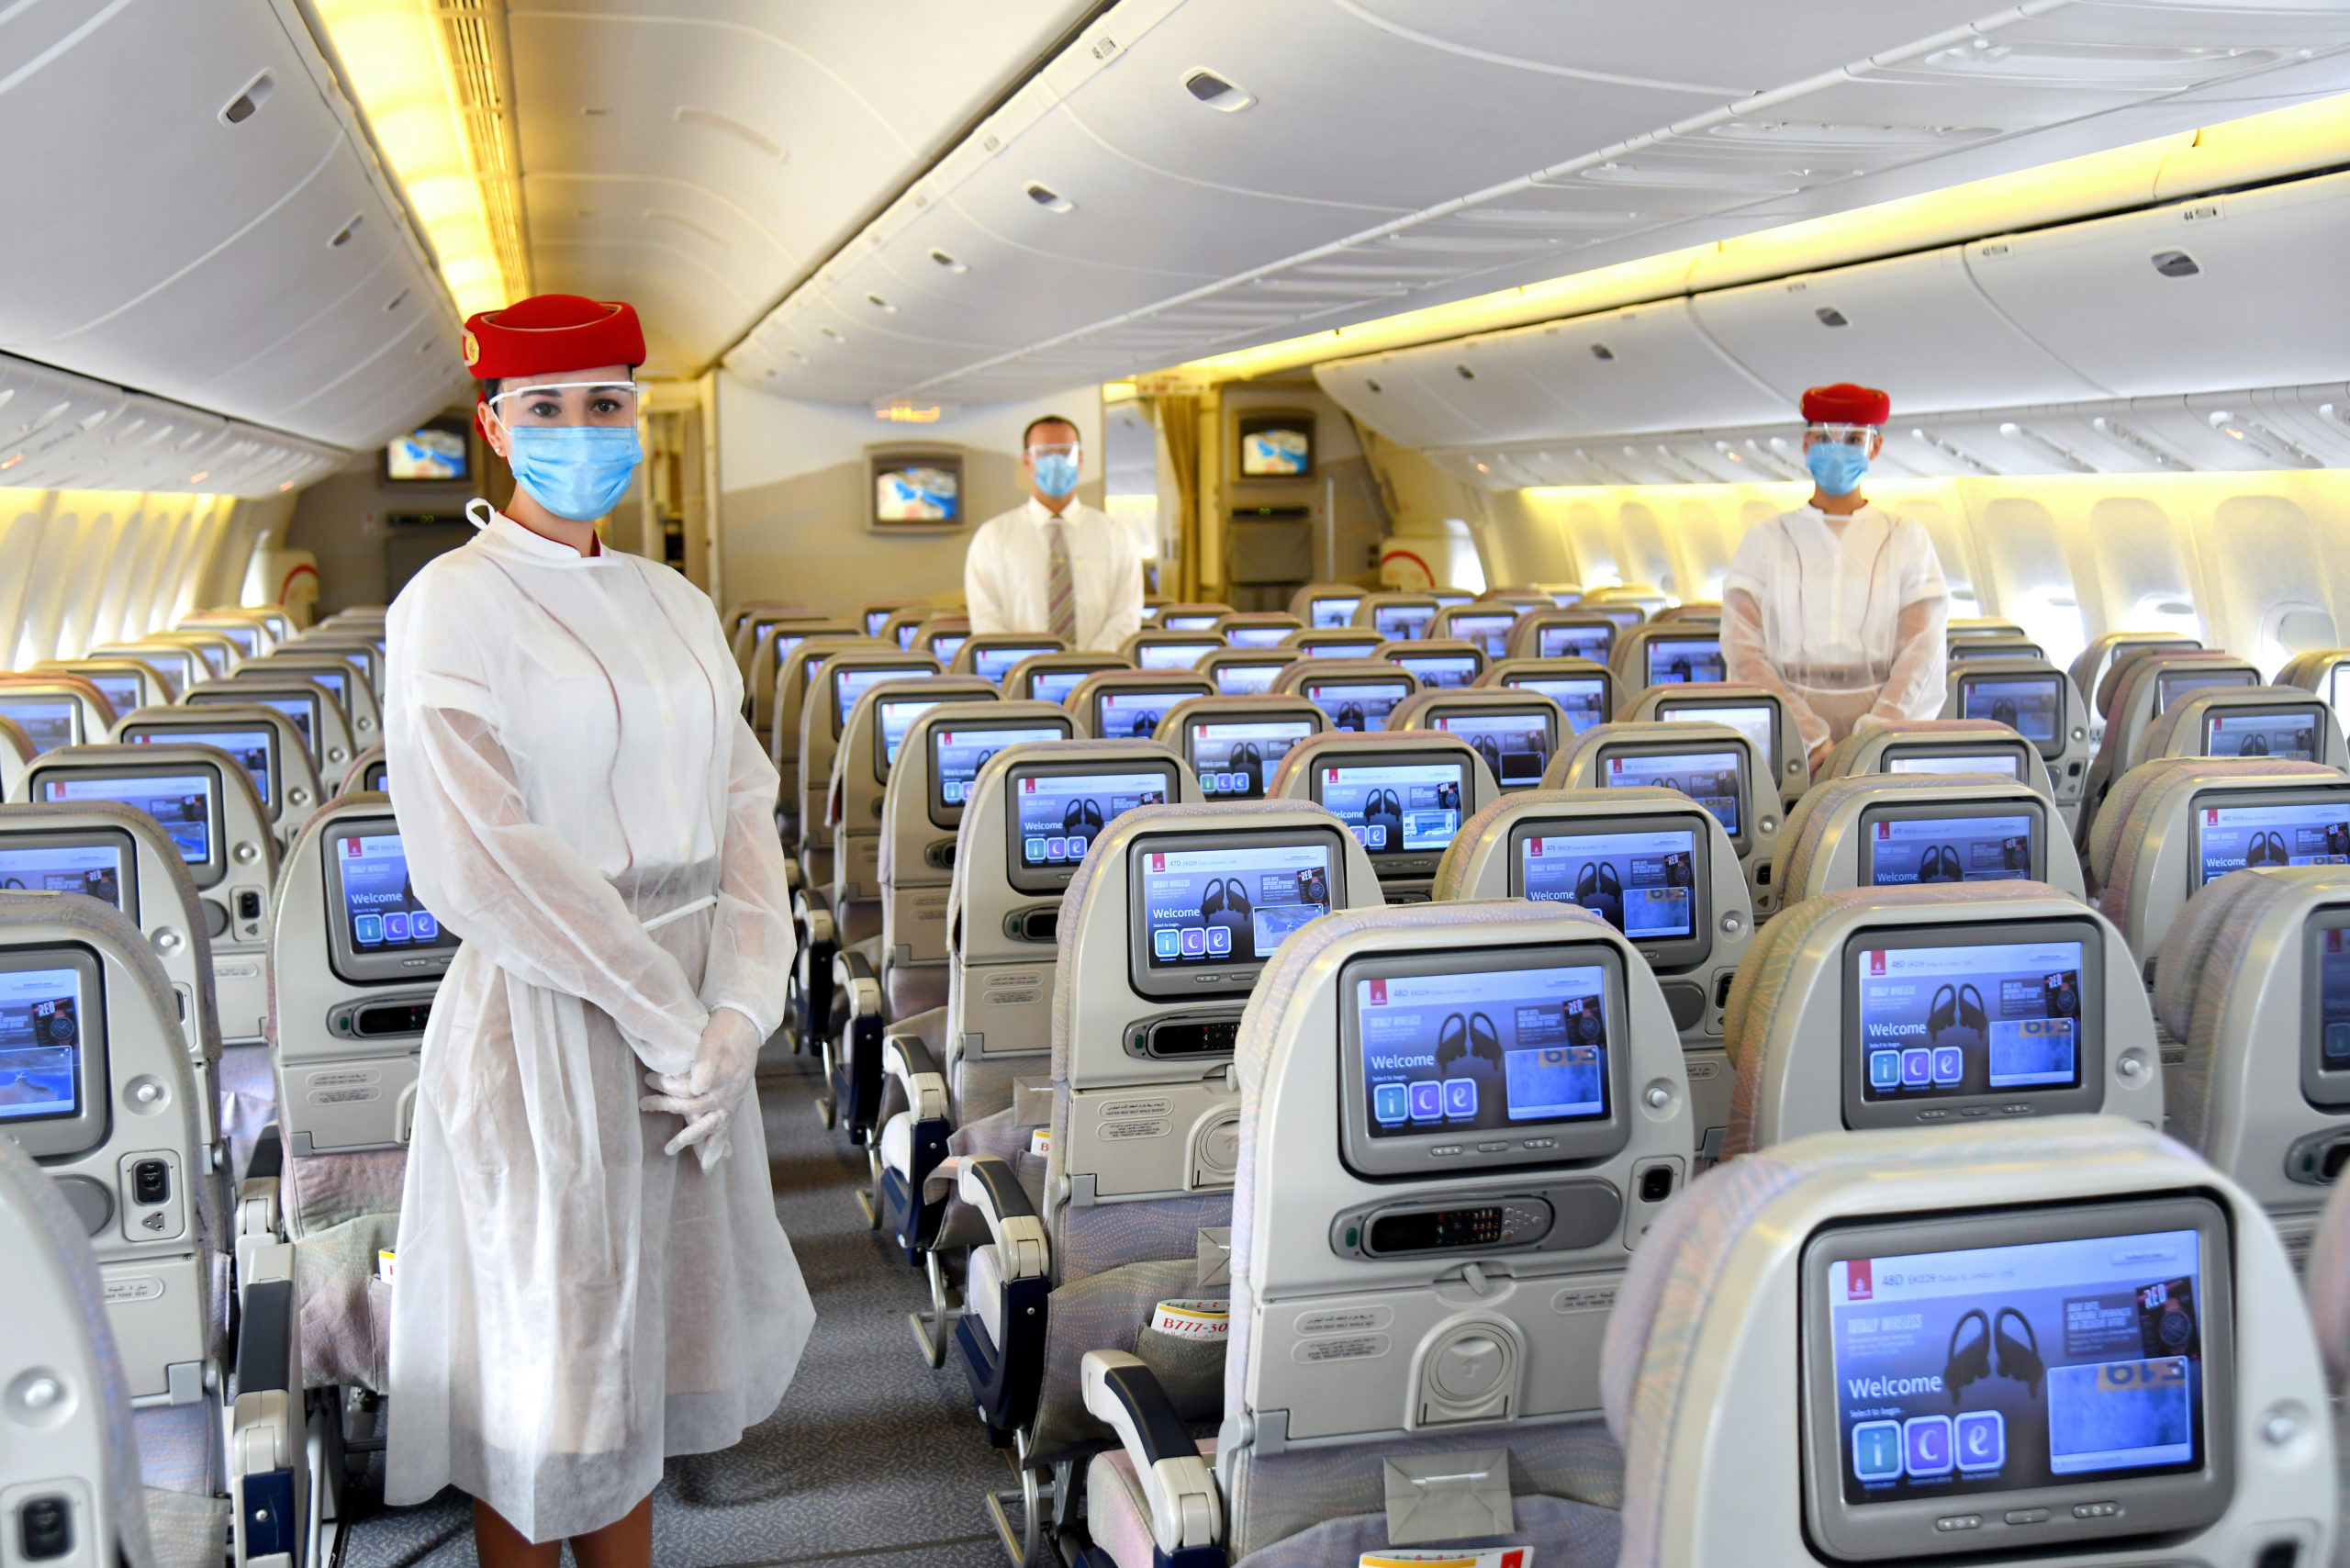 Сайт эмирейтс. Авиалинии Дубай Эмирейтс. Boeing 737-800 Emirates салон. Салон 737-800 flydubai. Авиалинии Дубай Эмирейтс самолеты.